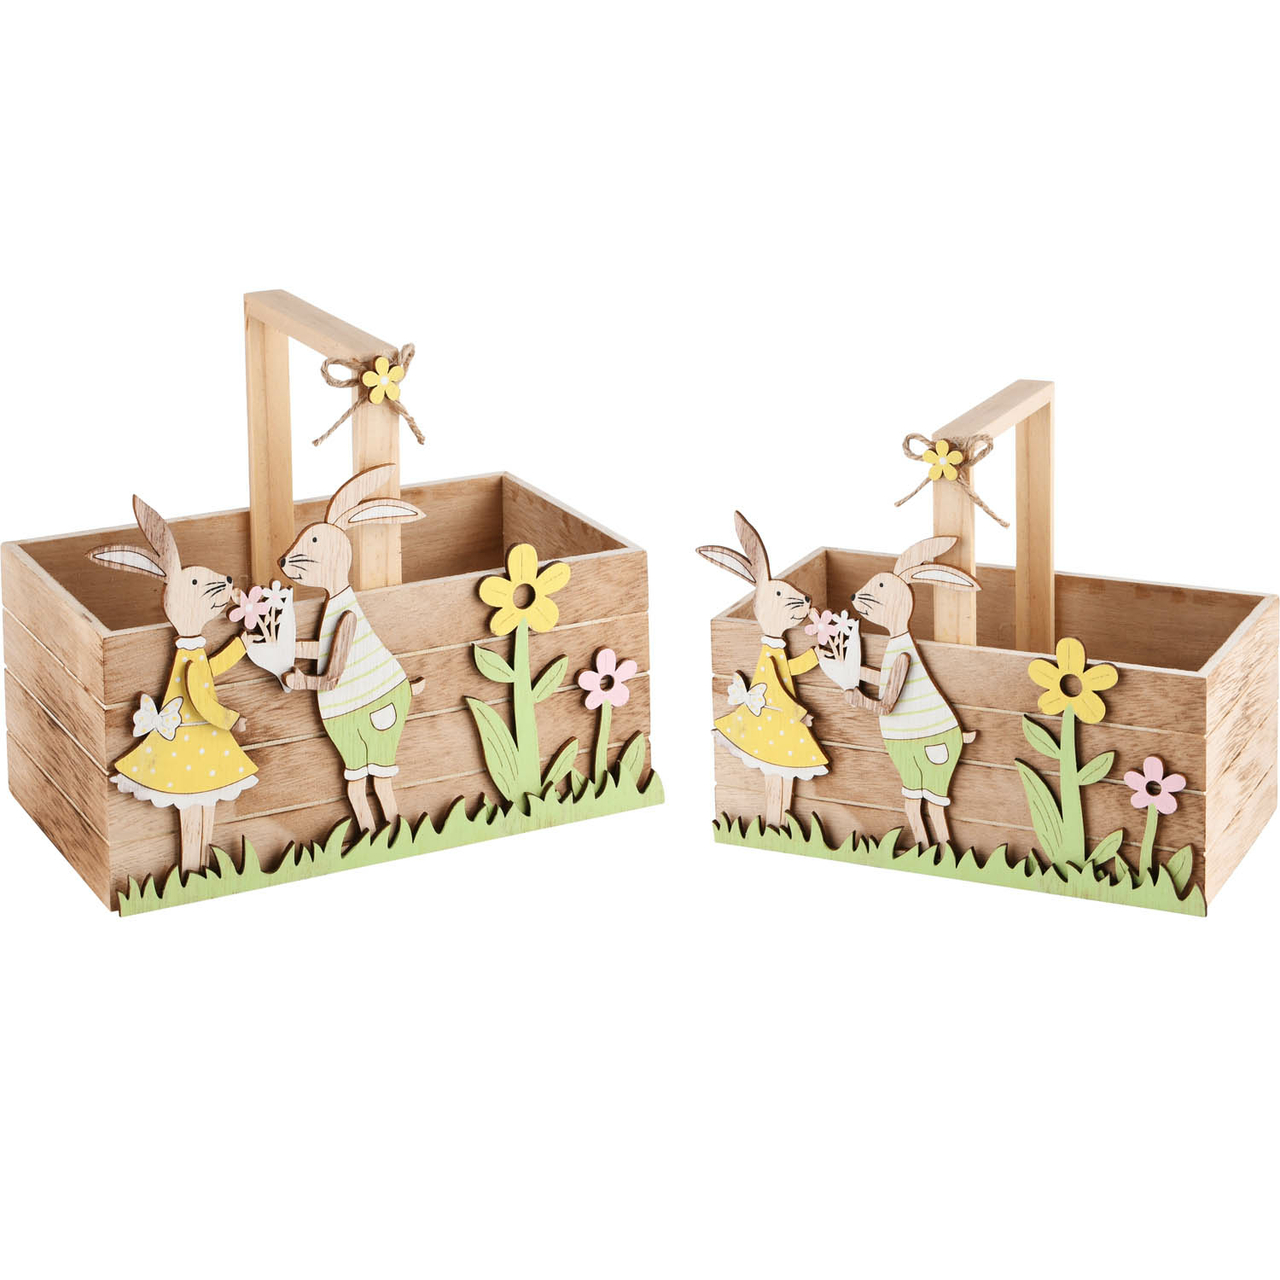 Dekoratief | Set 2 bakjes m/bunnies, naturel/geel/groen, hout, 20x10x17cm | A220032